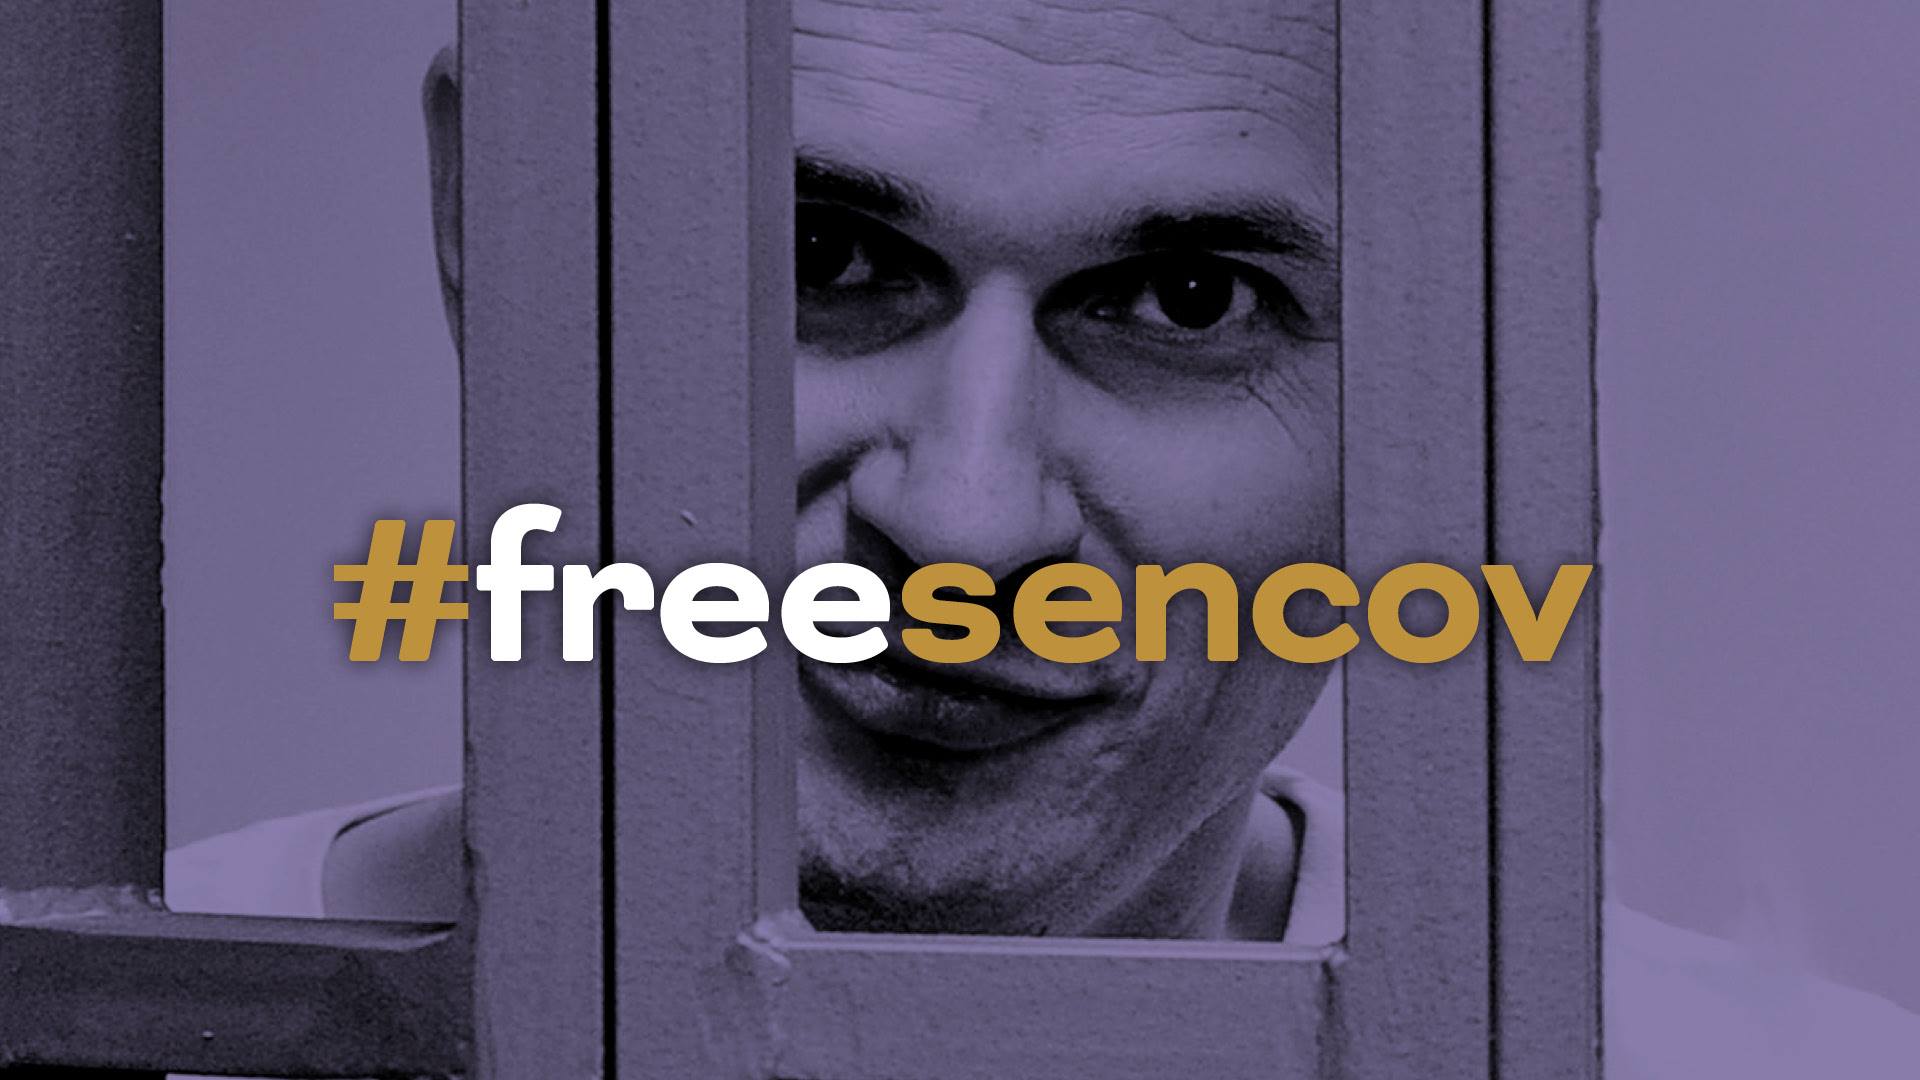 Free Sencov